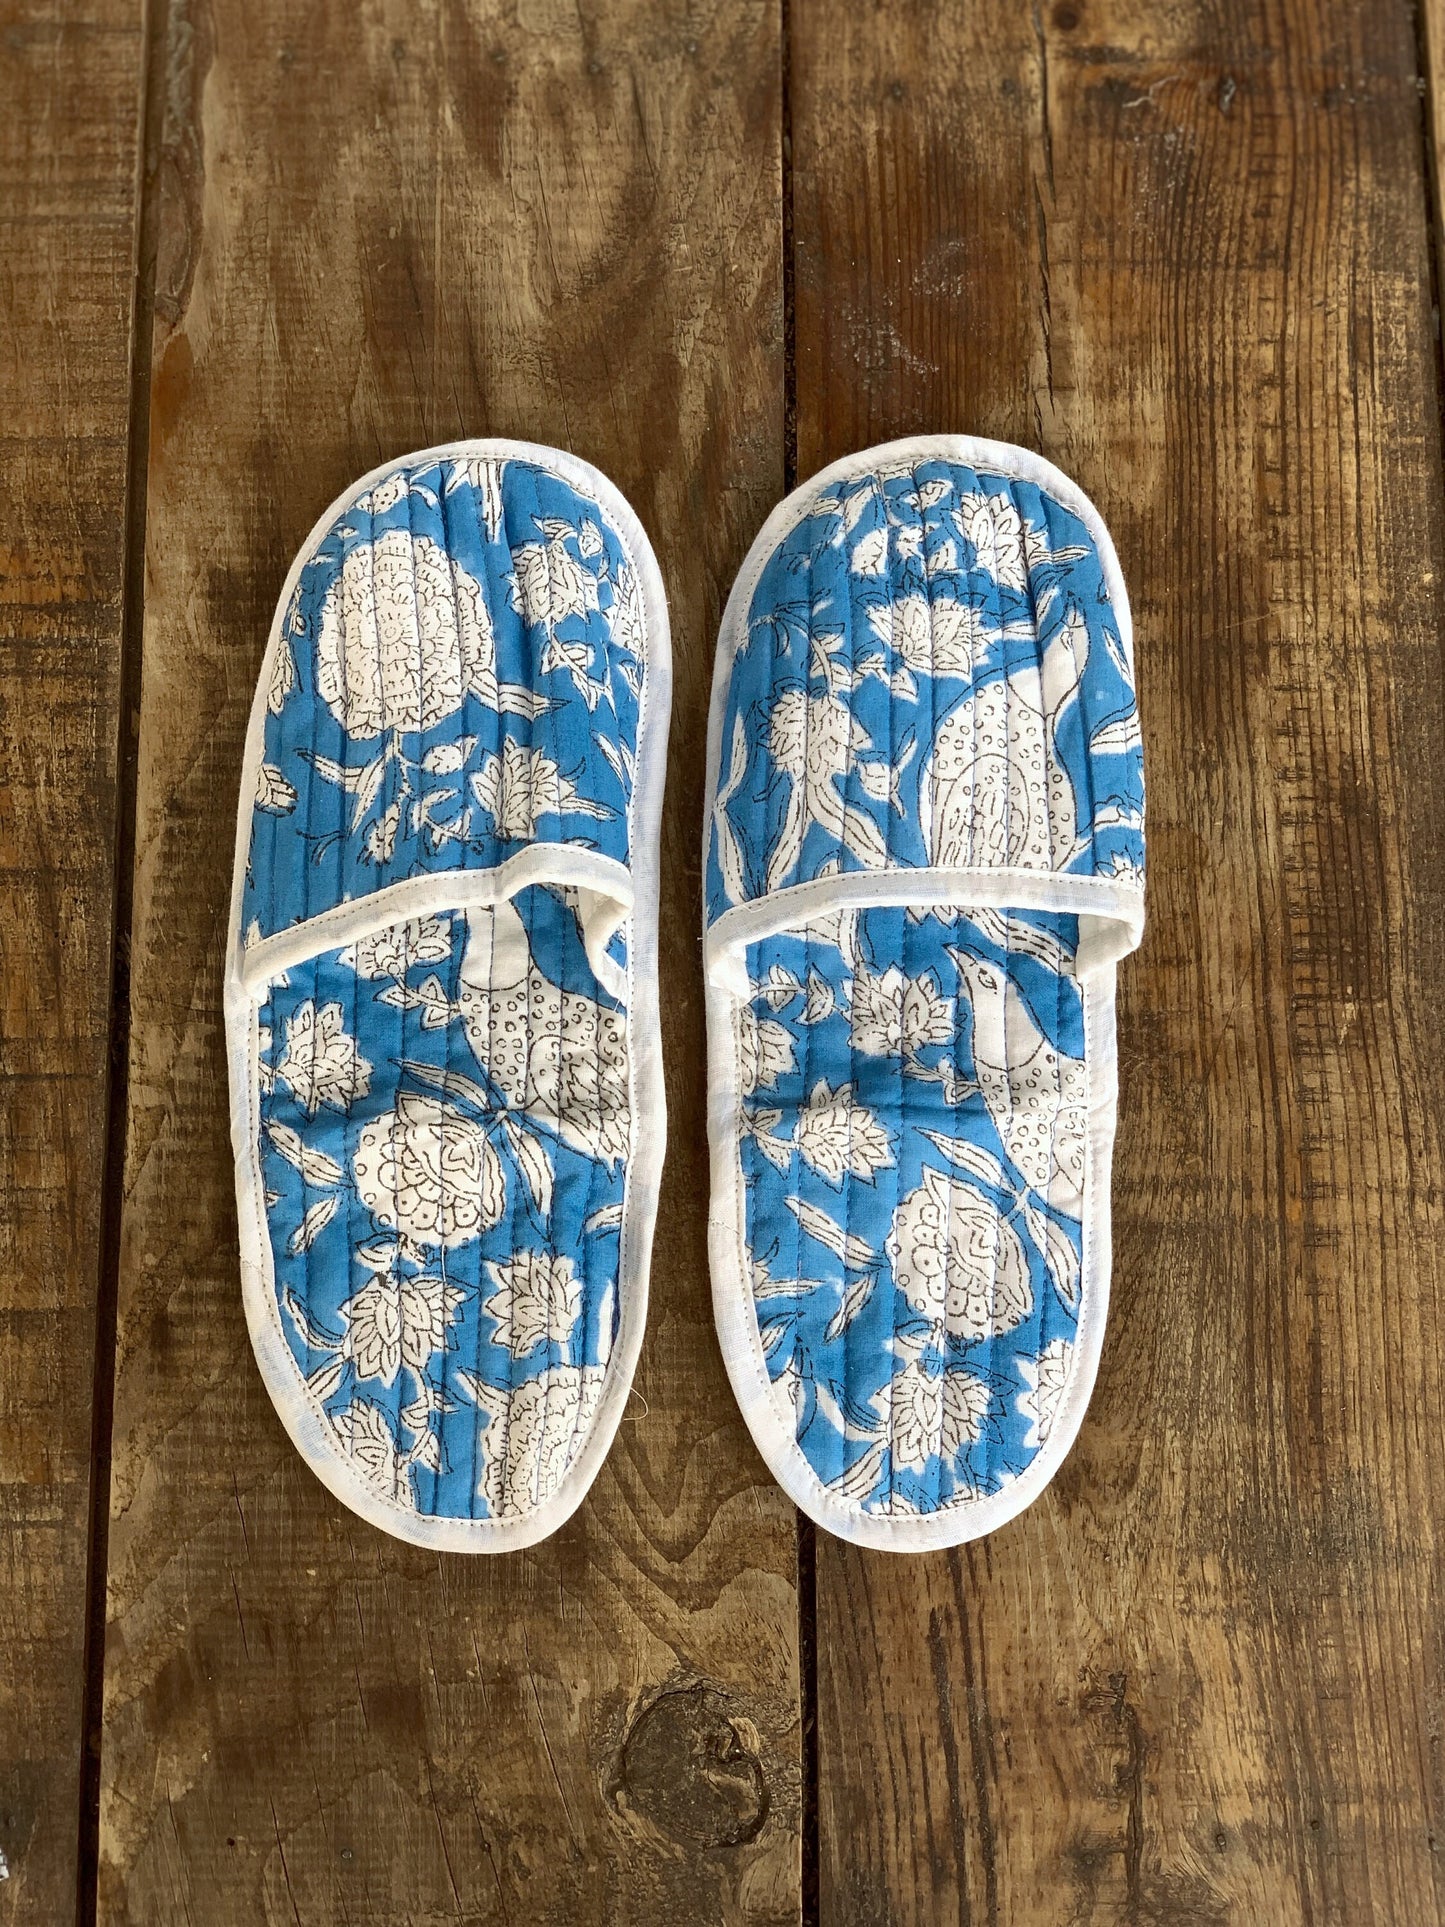 SET regalo · Camisón manga larga & zapatillas a juego · Algodón puro estampado block print artesanal en India · Azul pájaros blanco